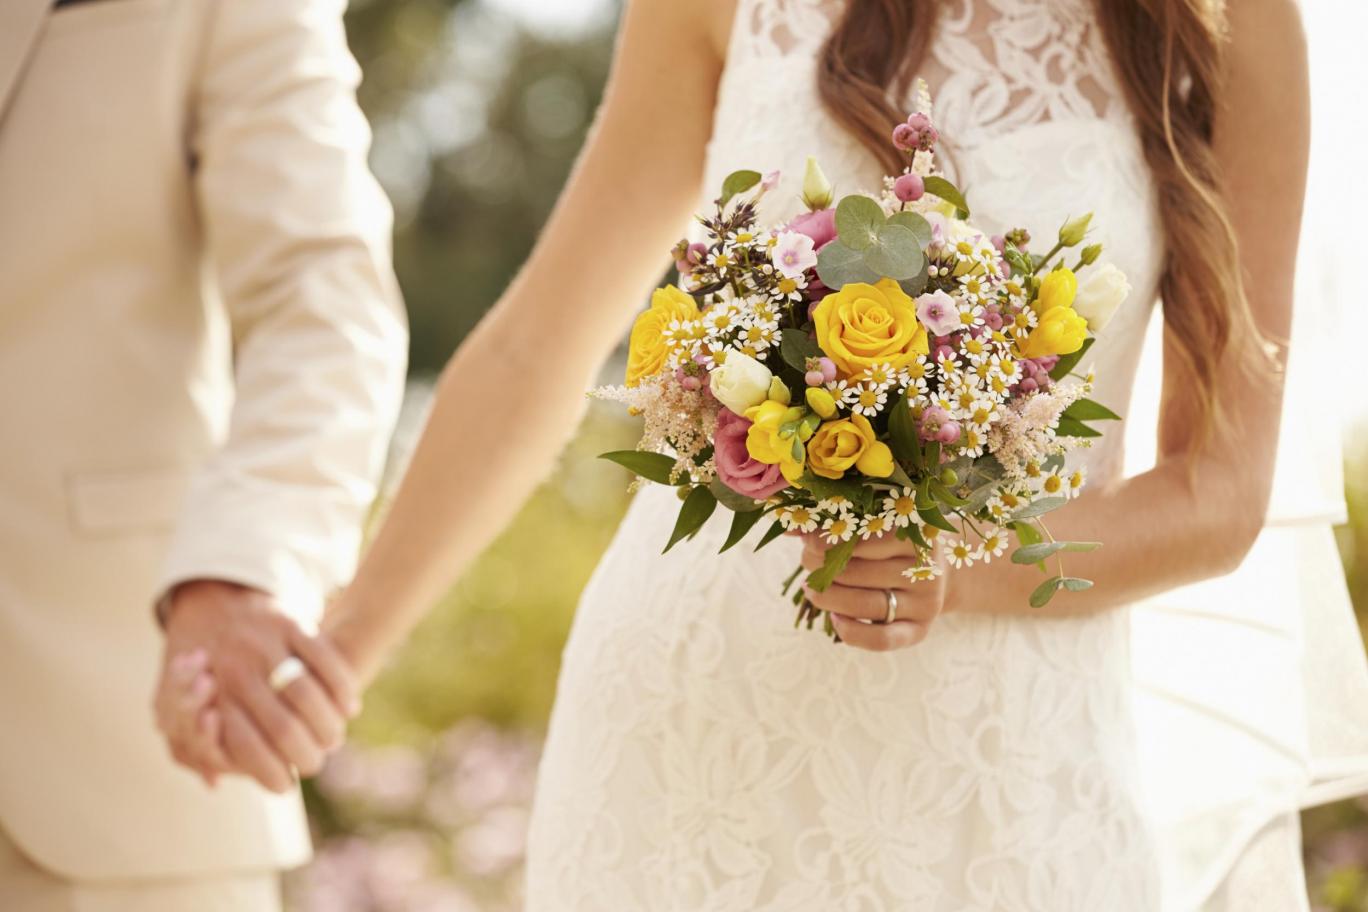 Цієї п’ятниці у Києві очікується весільний бум — мають одружитися у п’ять разів більше пар